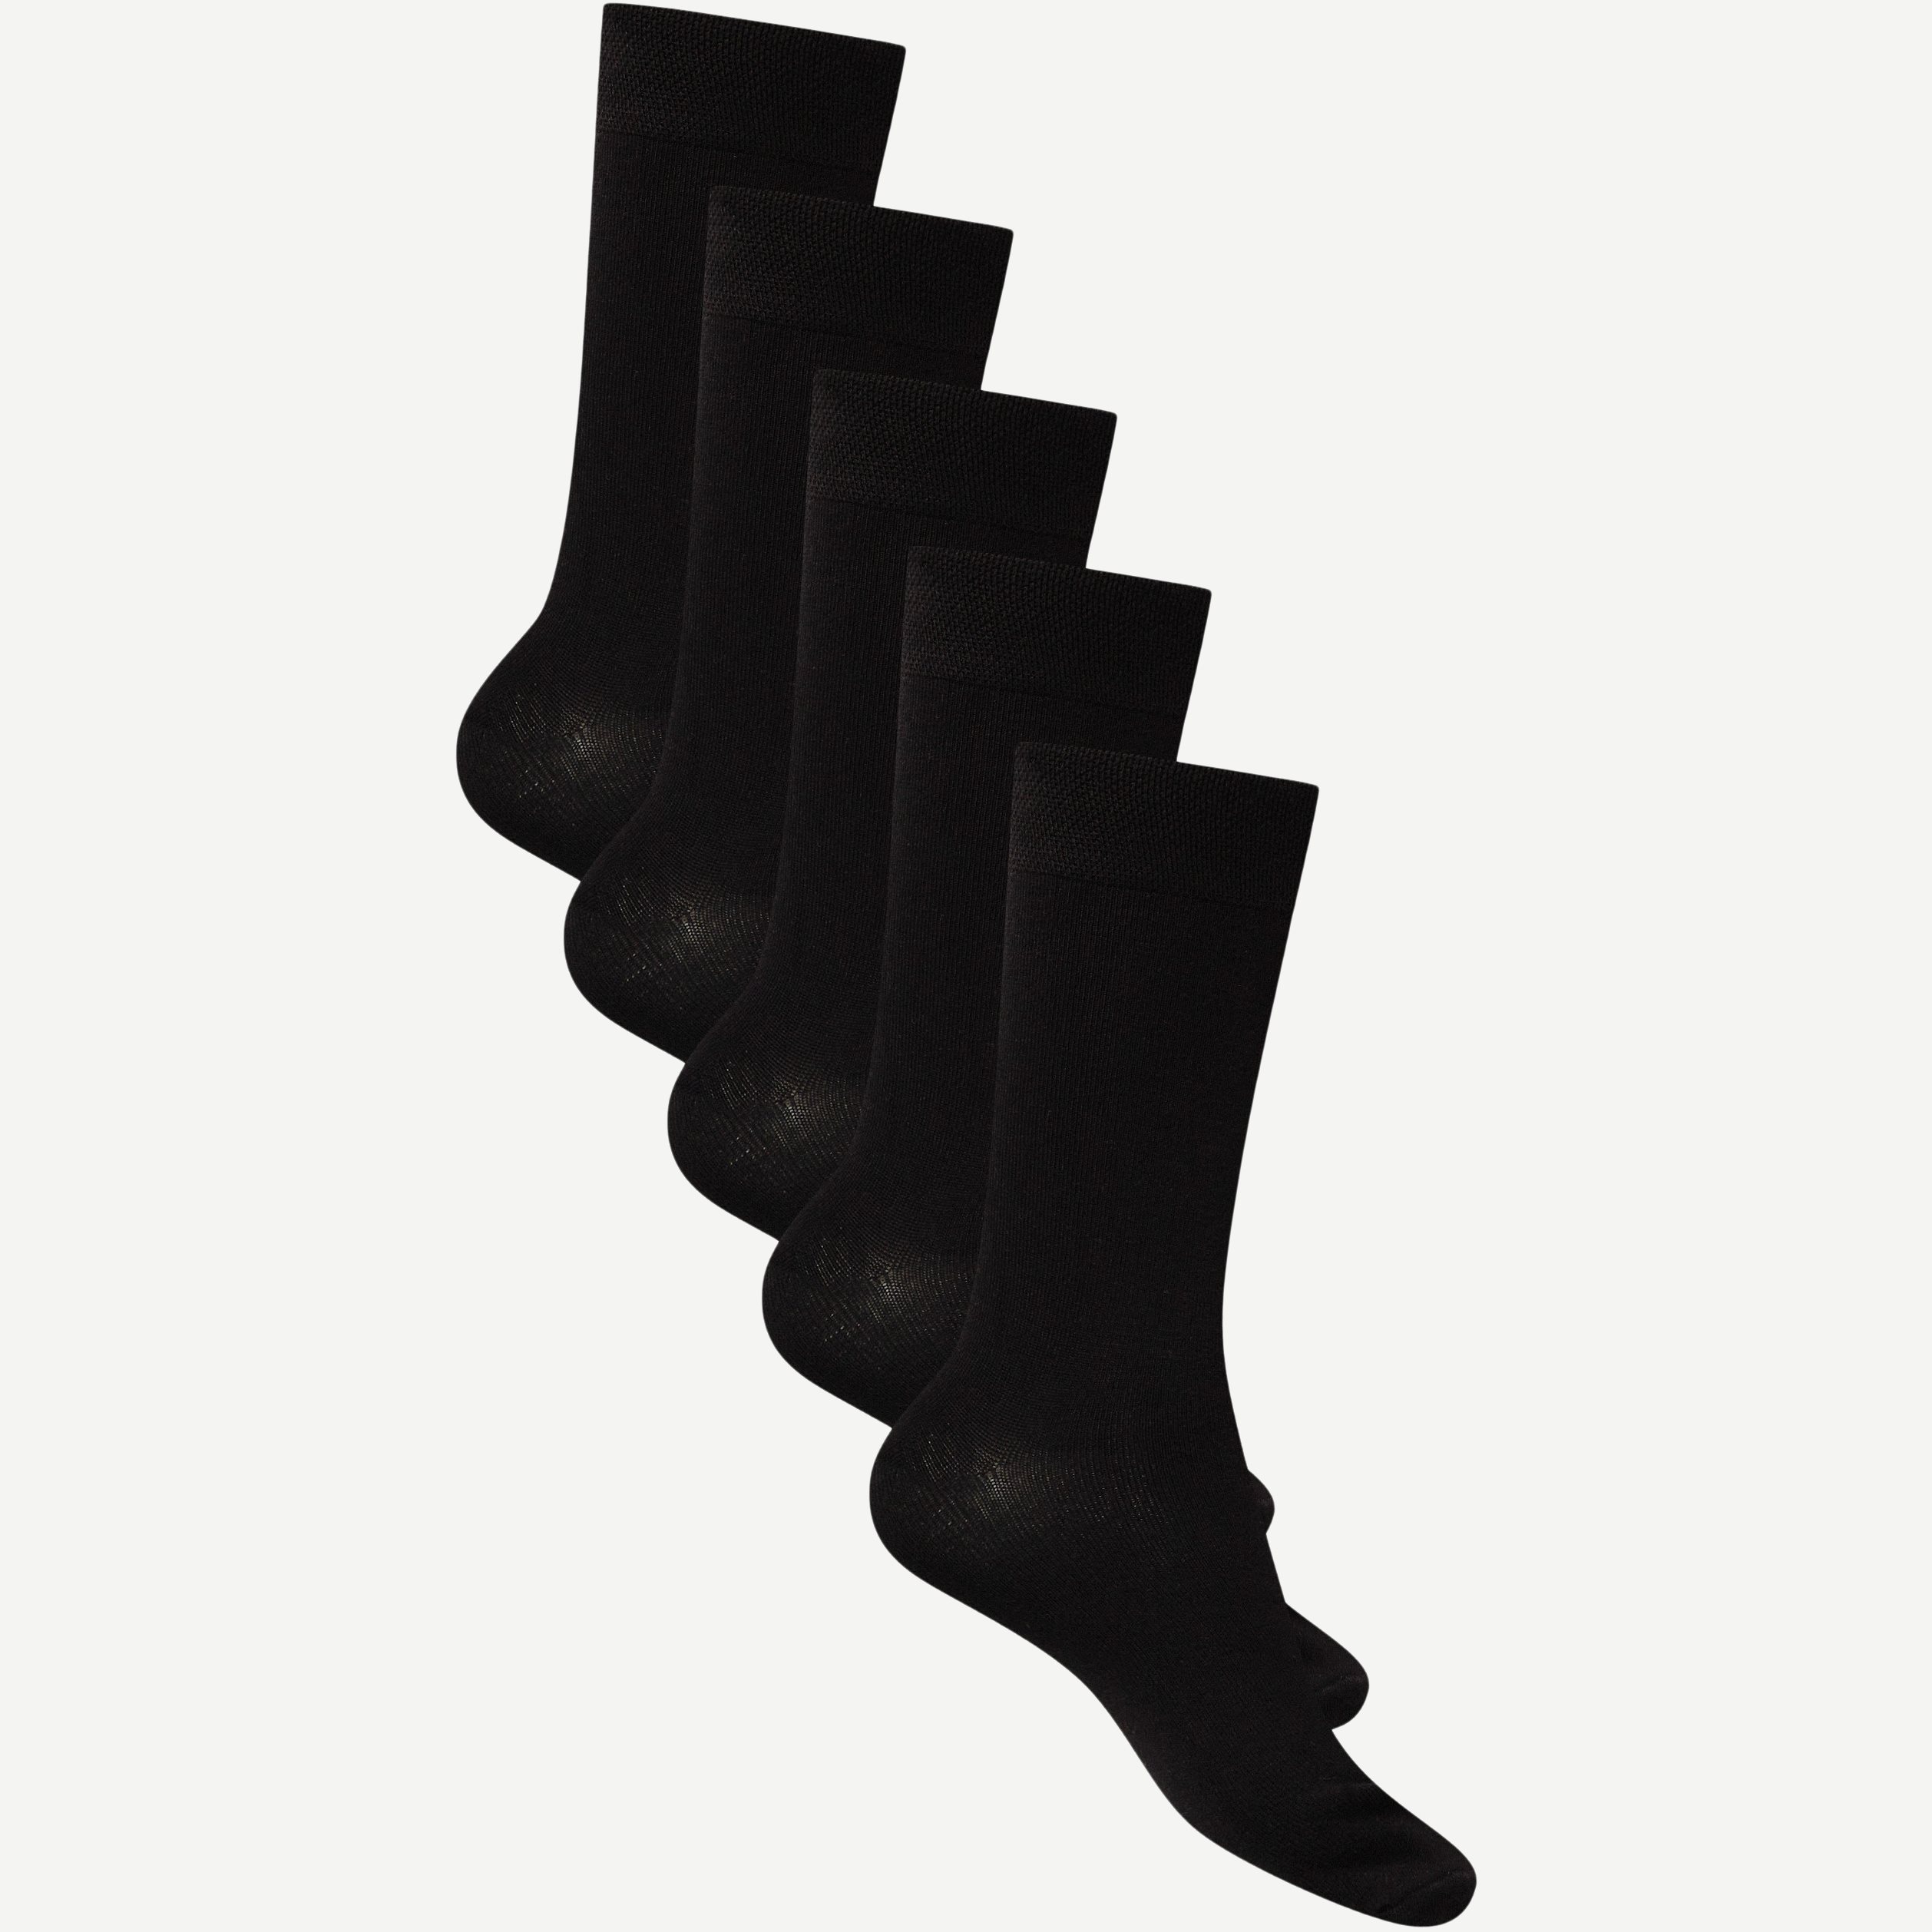 URBAN QUEST Socks 1430 5-PACK BAMBOO BASIC SOCKS Black